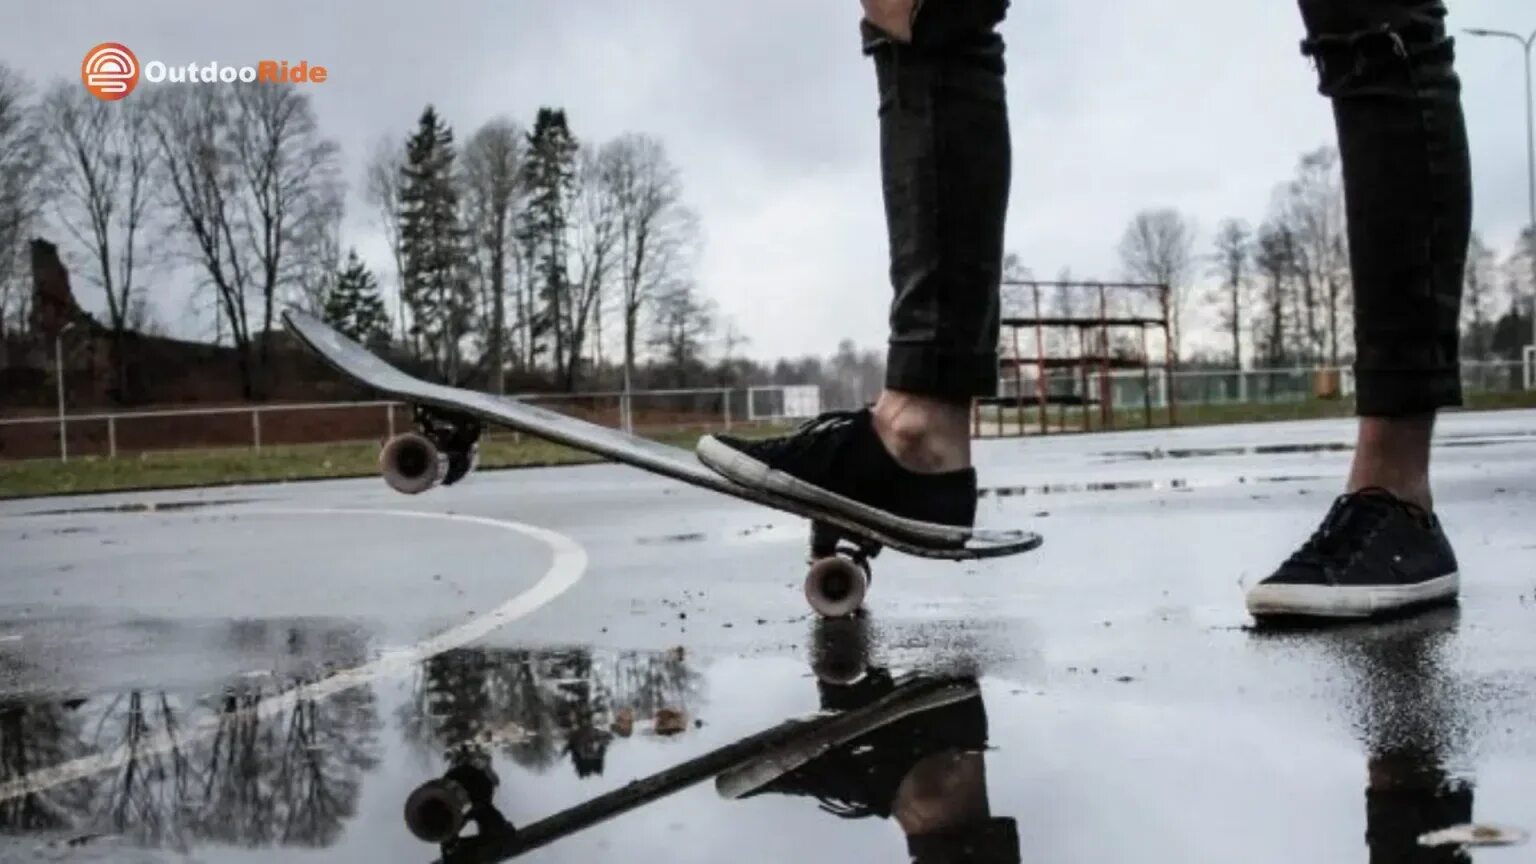 Вес скейтборда. Скейт колёса для дождя. Лопата на колёсах от скейта приколы. Skaters Demo. Rain damage